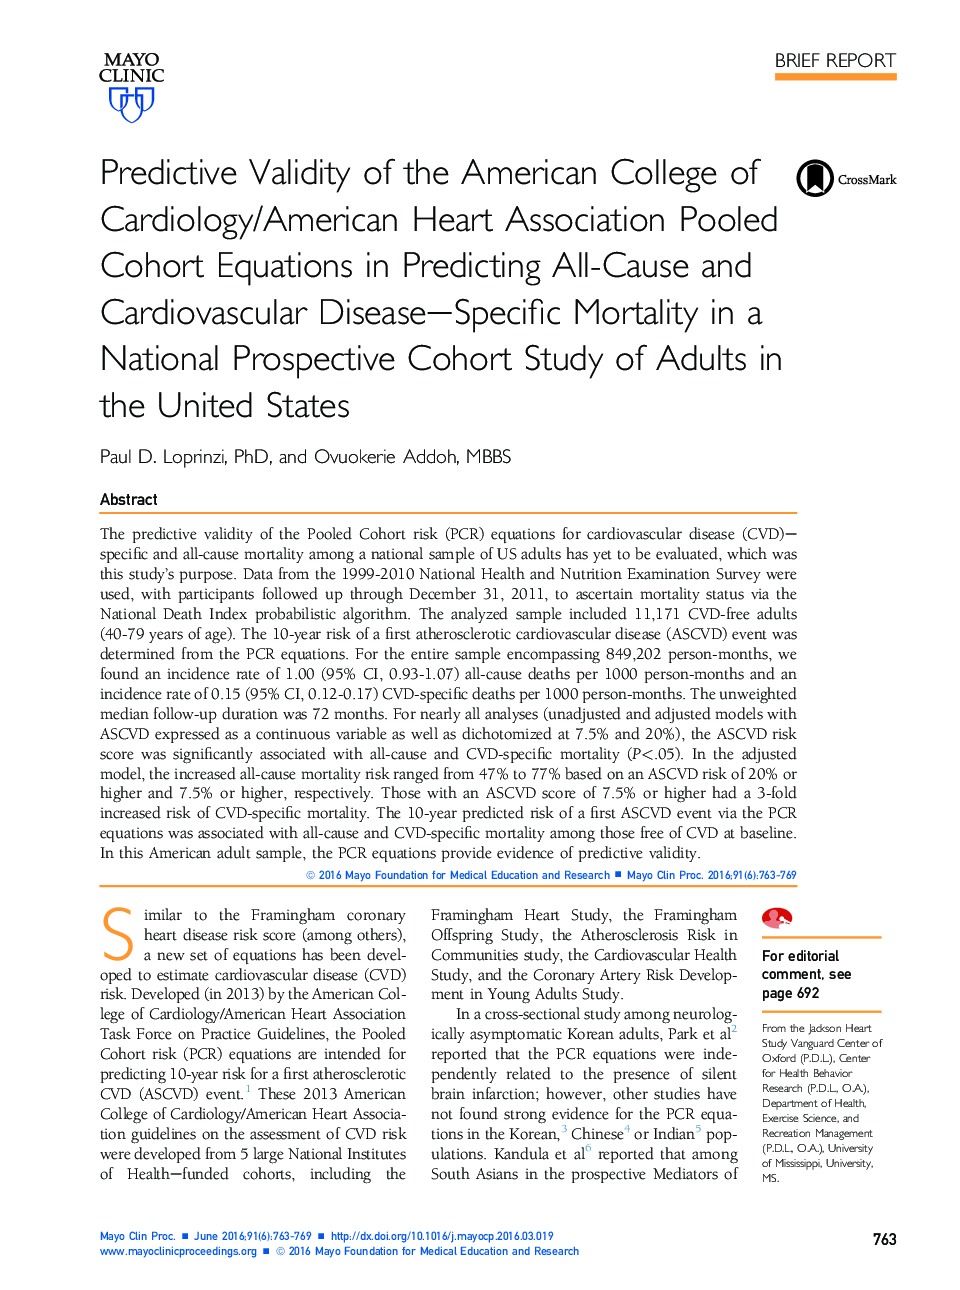 اعتبار پیش بینی کالج آمریکایی قلب و عروق / انجمن قلب آمریکا، معادلات همجوشی را در پیش بینی مرگ و میر ناشی از بیماری همه گیر و قلب و عروق در یک مطالعه همگانی ملی در آمریکا در ایالات متحده 